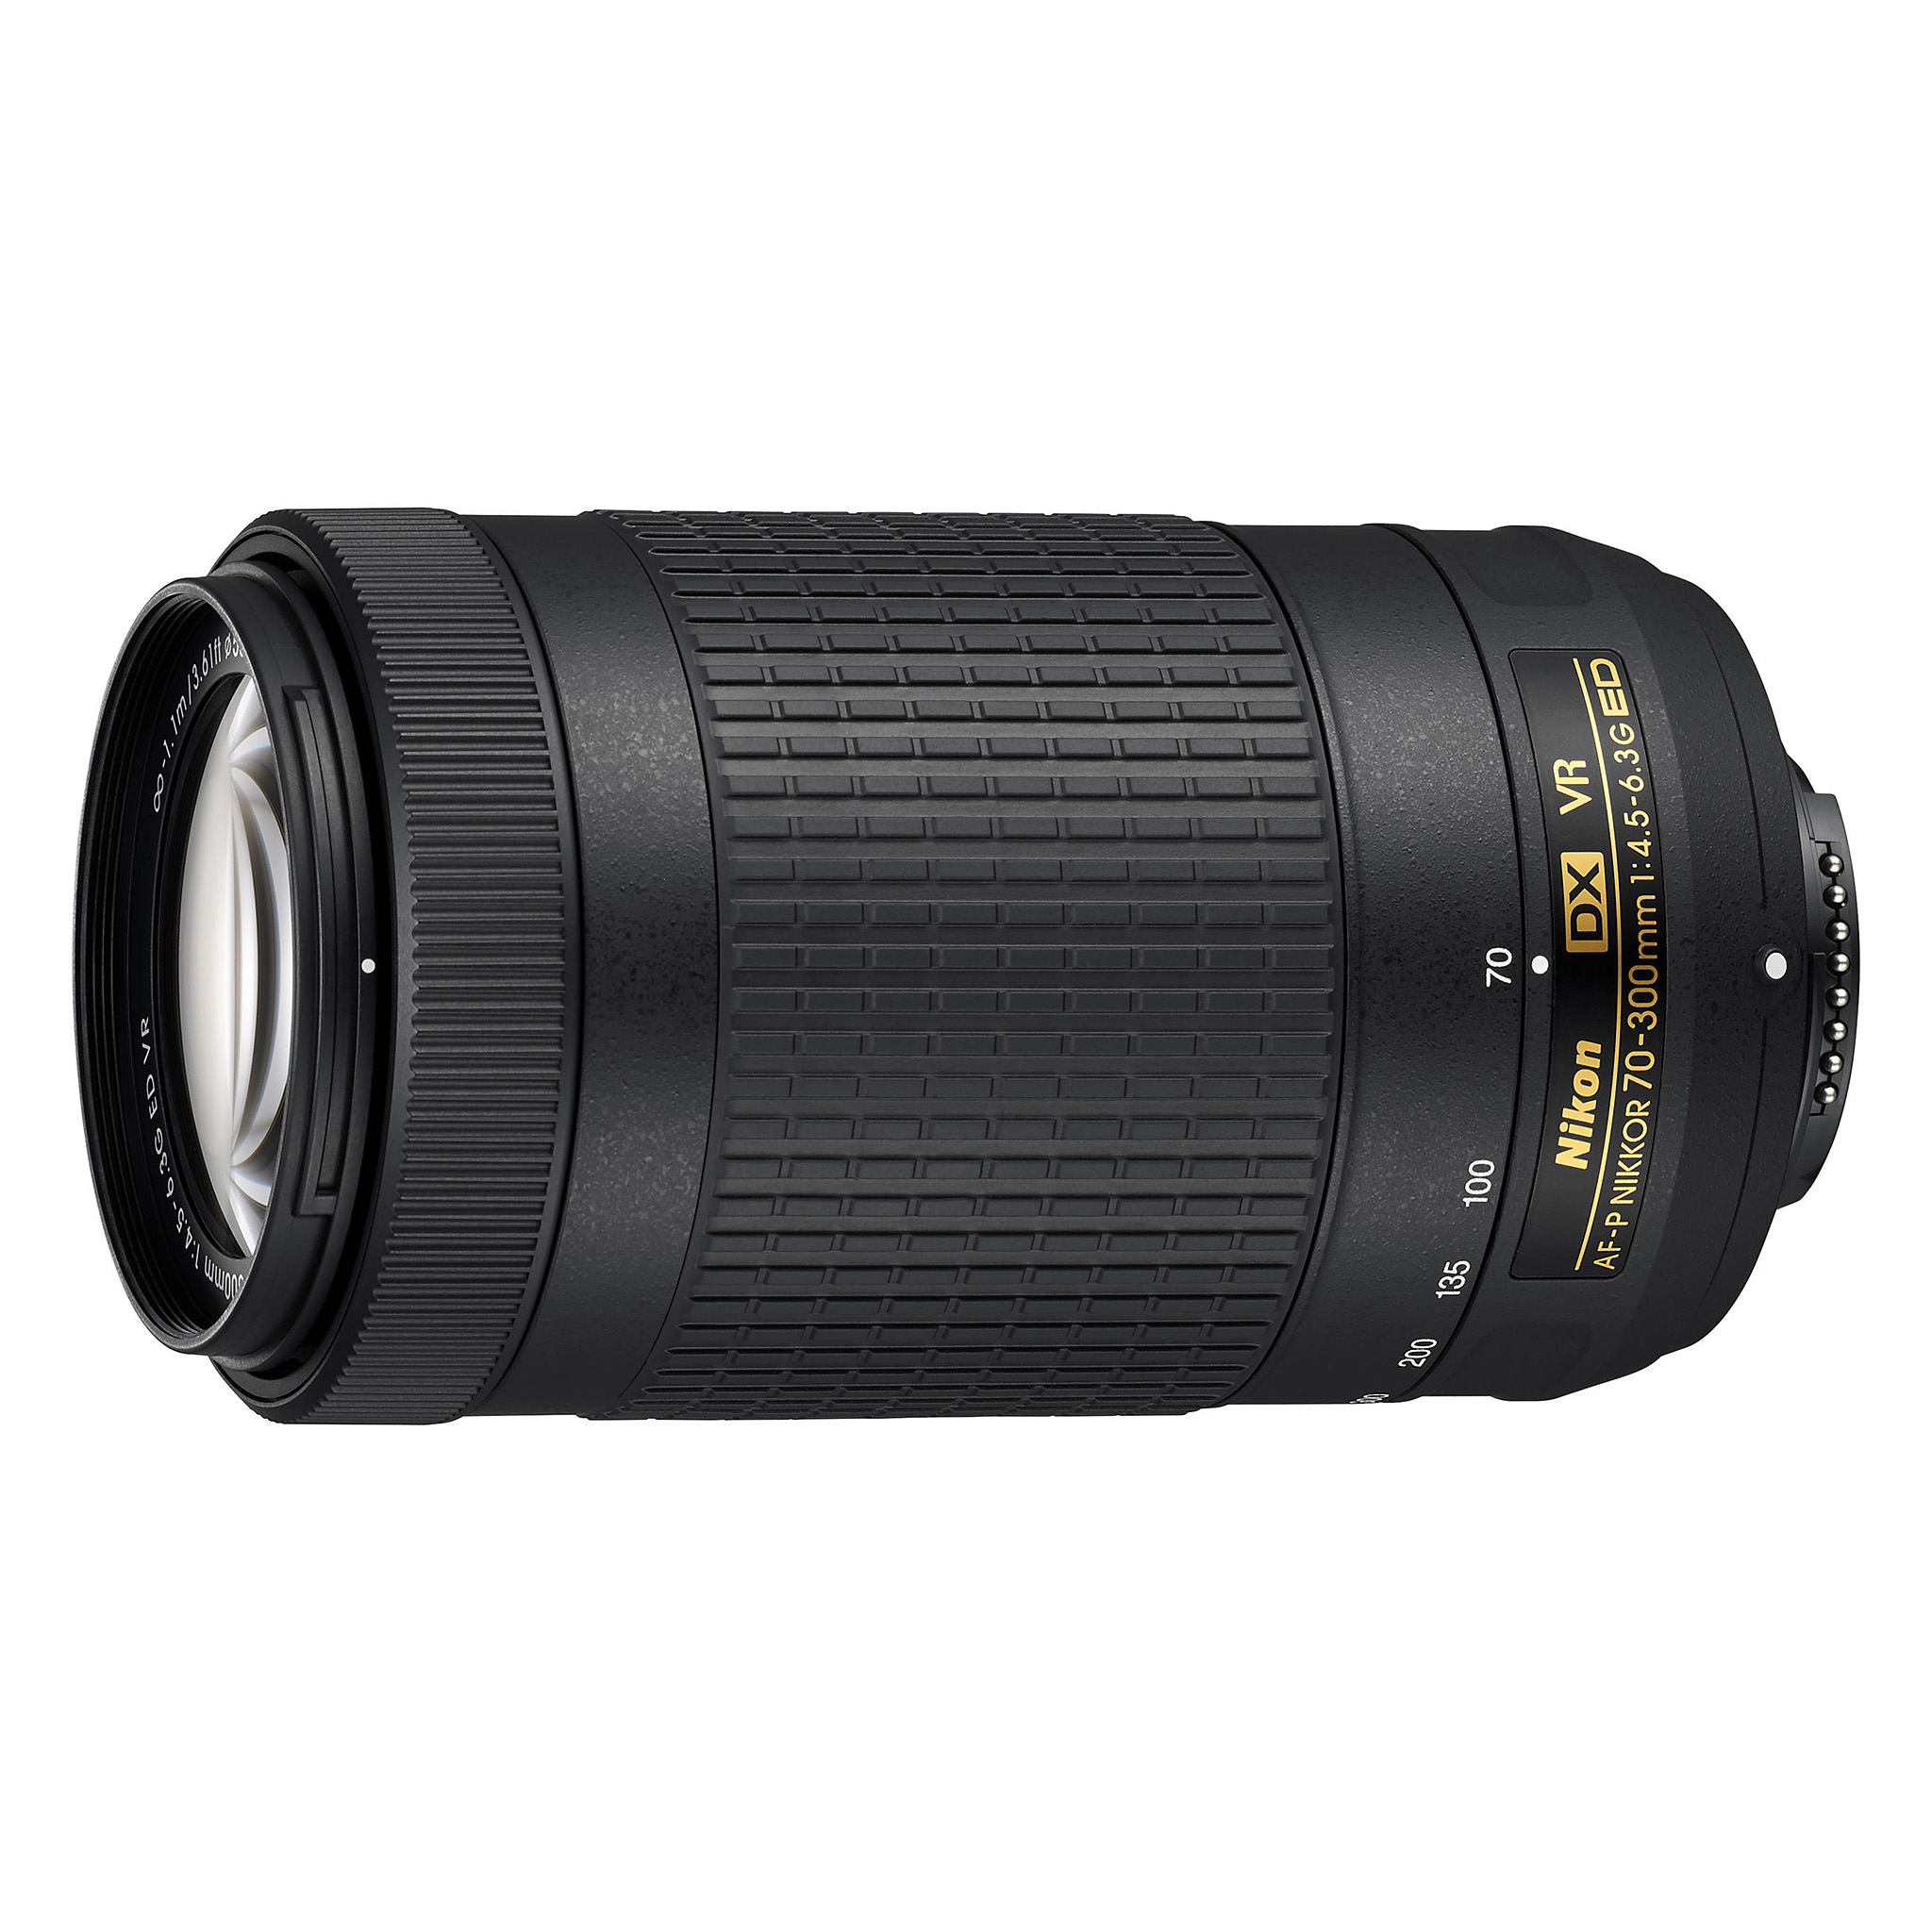 Nikon 70-300mm f/4.5-6.3G DX VR AF-P Review